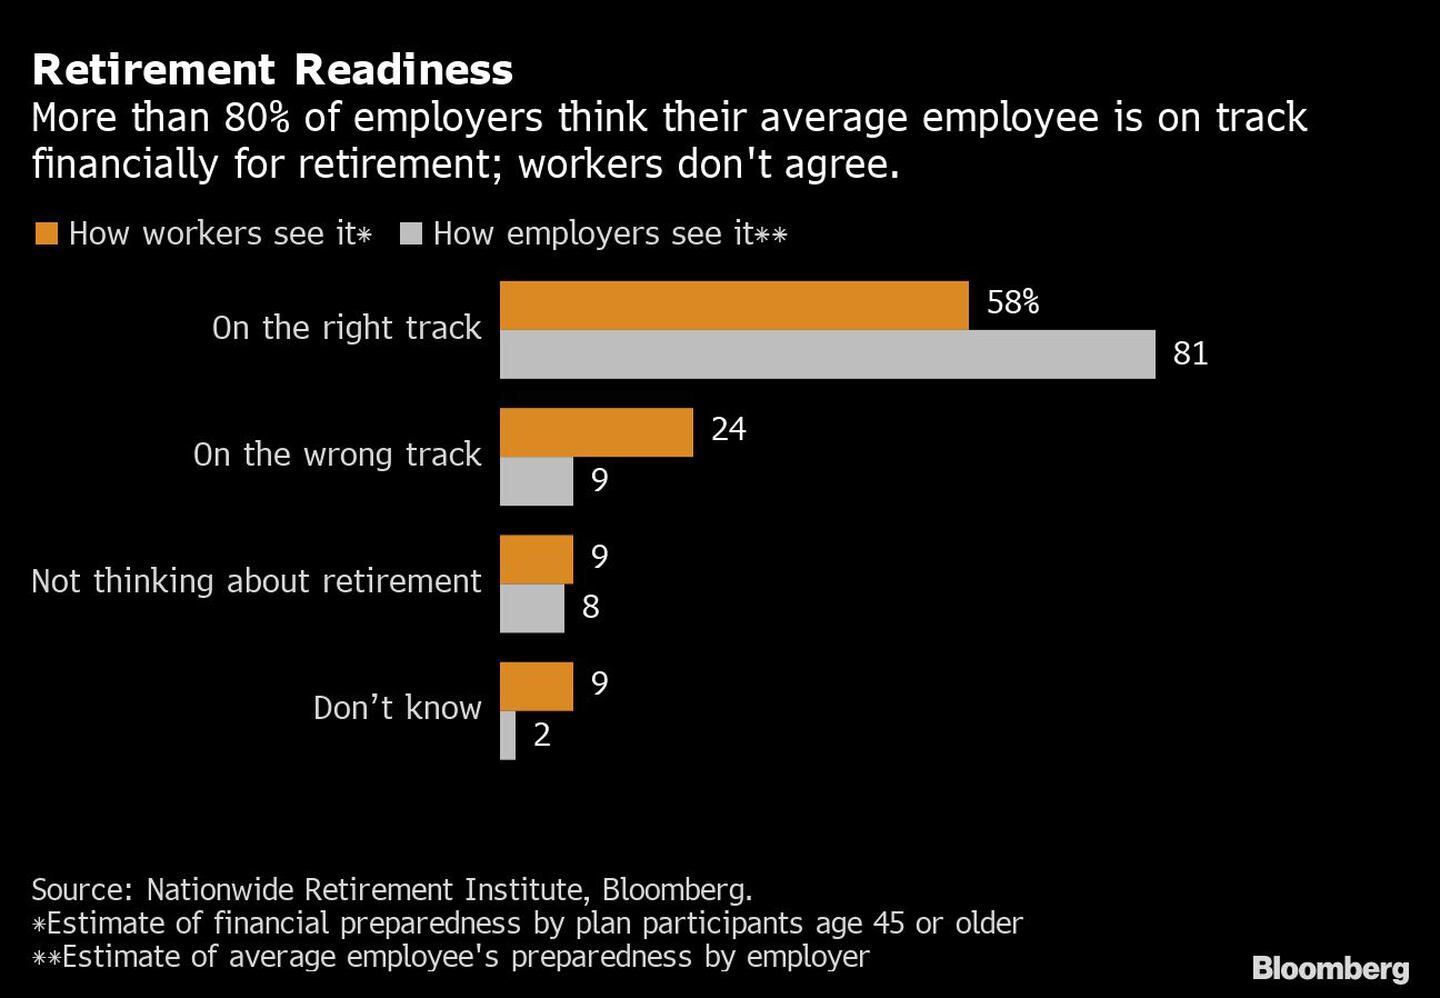  Más del 80% de los empresarios creen que su empleado medio está bien preparado económicamente para la jubilación; los trabajadores no están de acuerdo.dfd